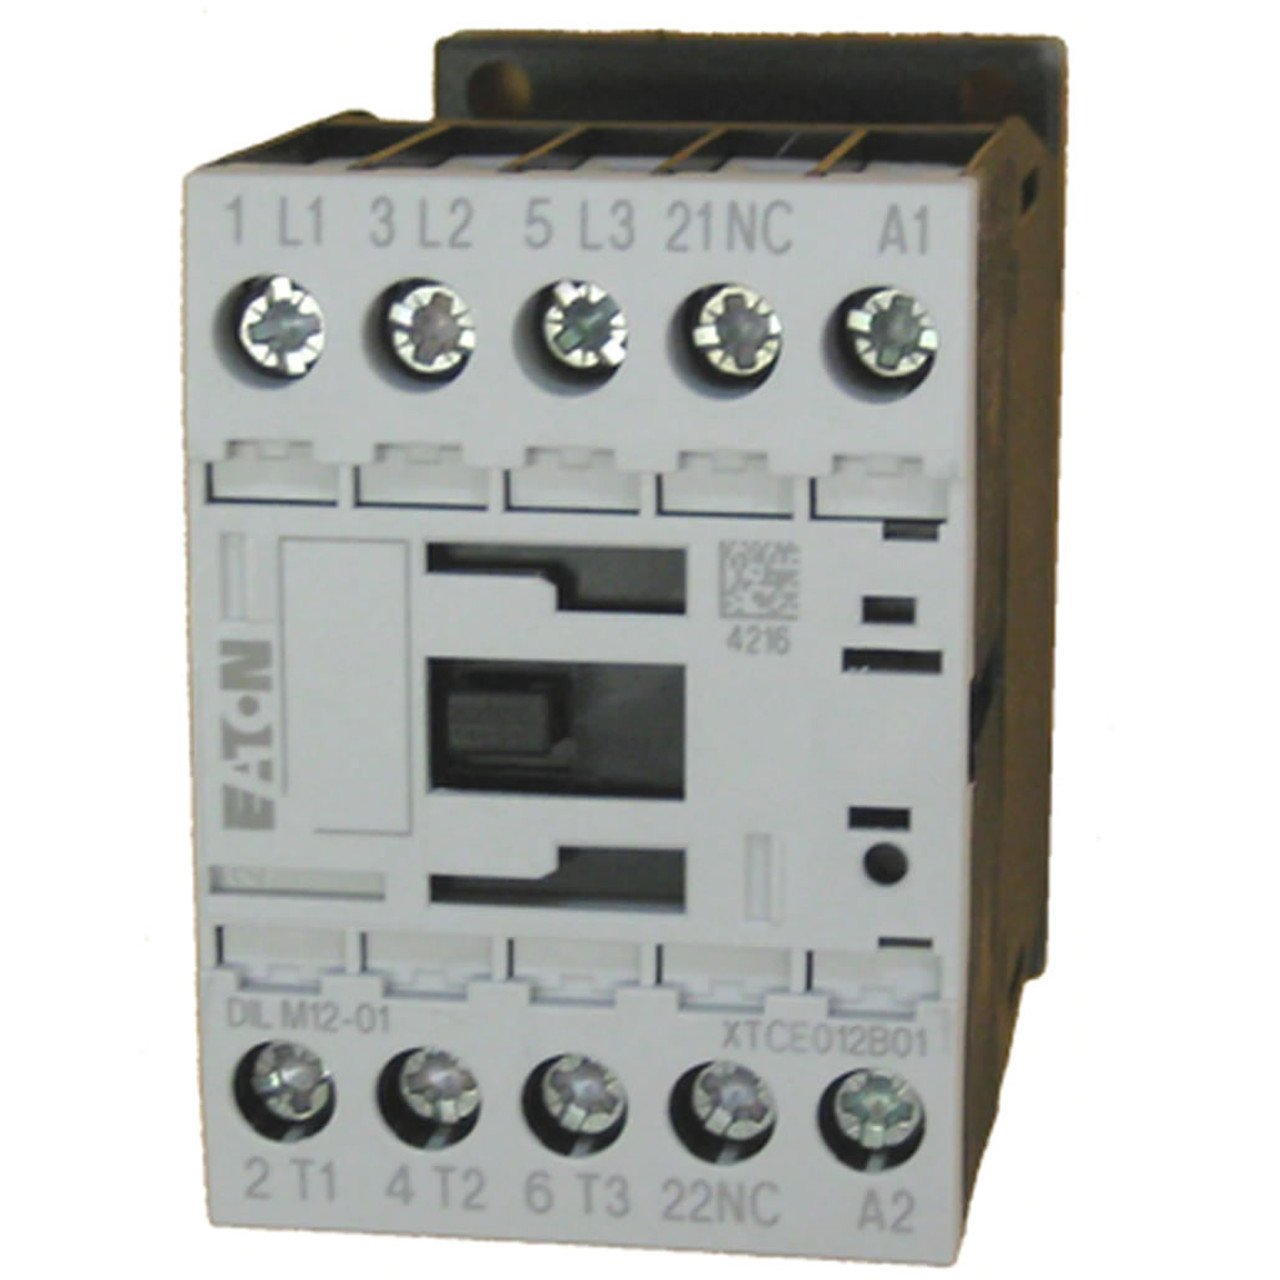 Eaton XTCE012B01H contactor